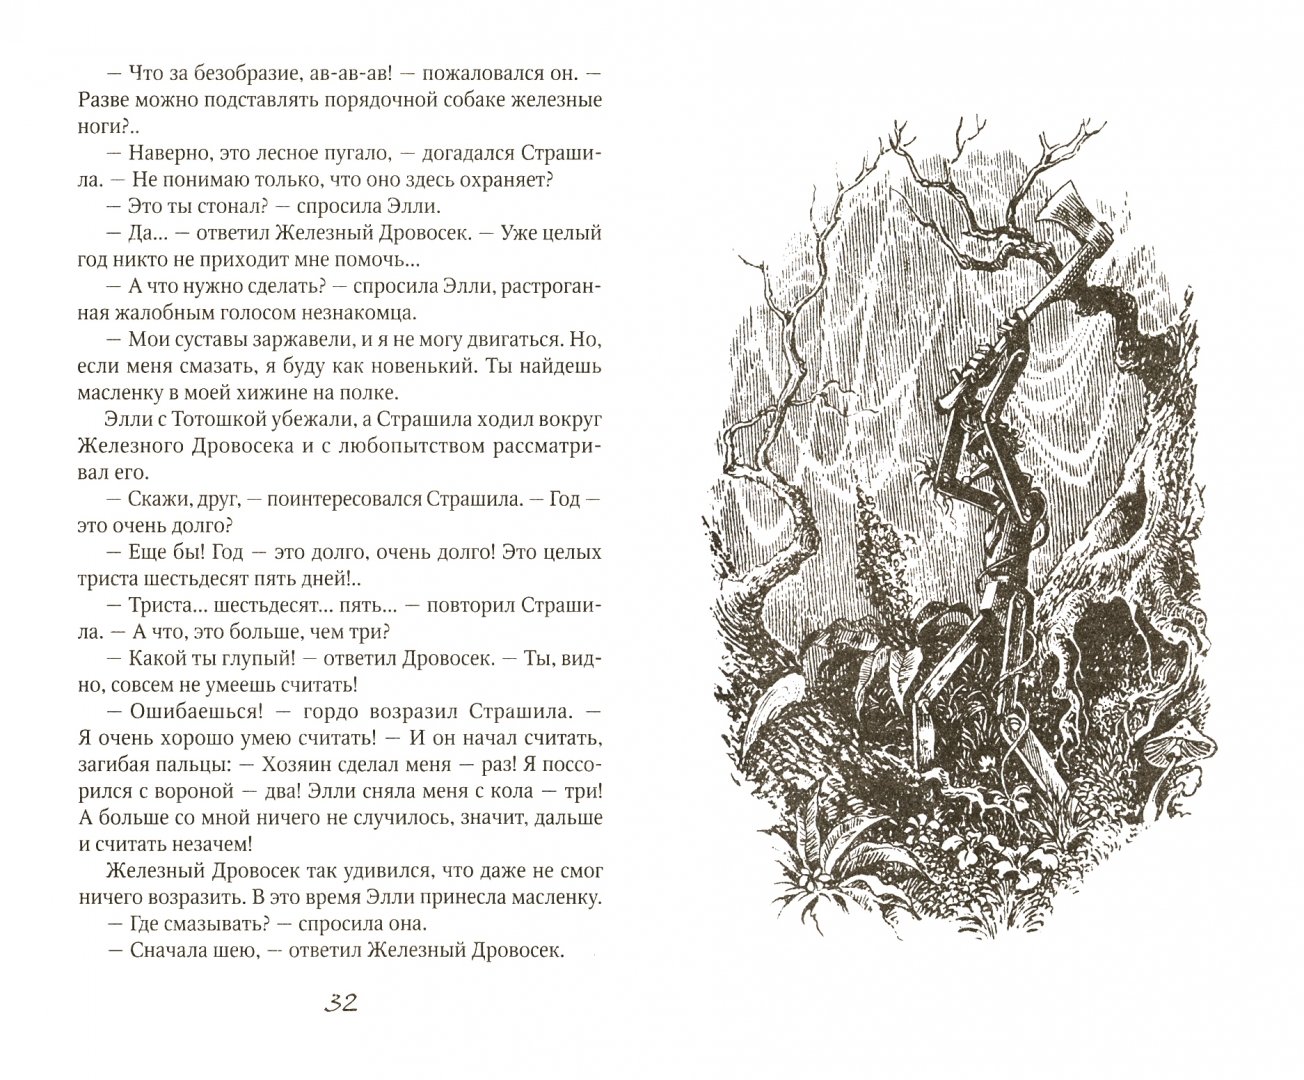 Иллюстрация 1 из 20 для Волшебник изумрудного города - Александр Волков | Лабиринт - книги. Источник: Лабиринт